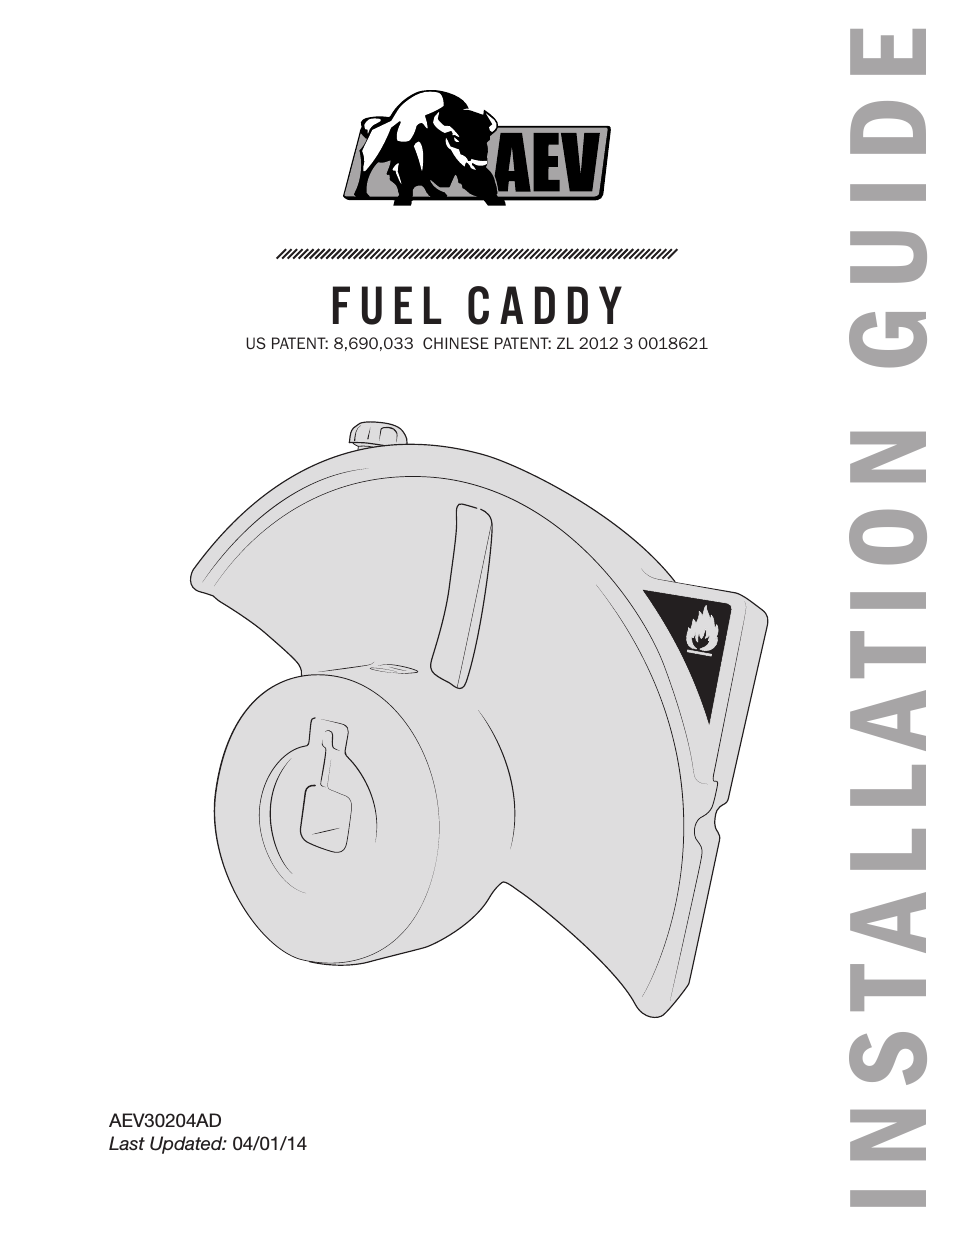 Fuel caddy